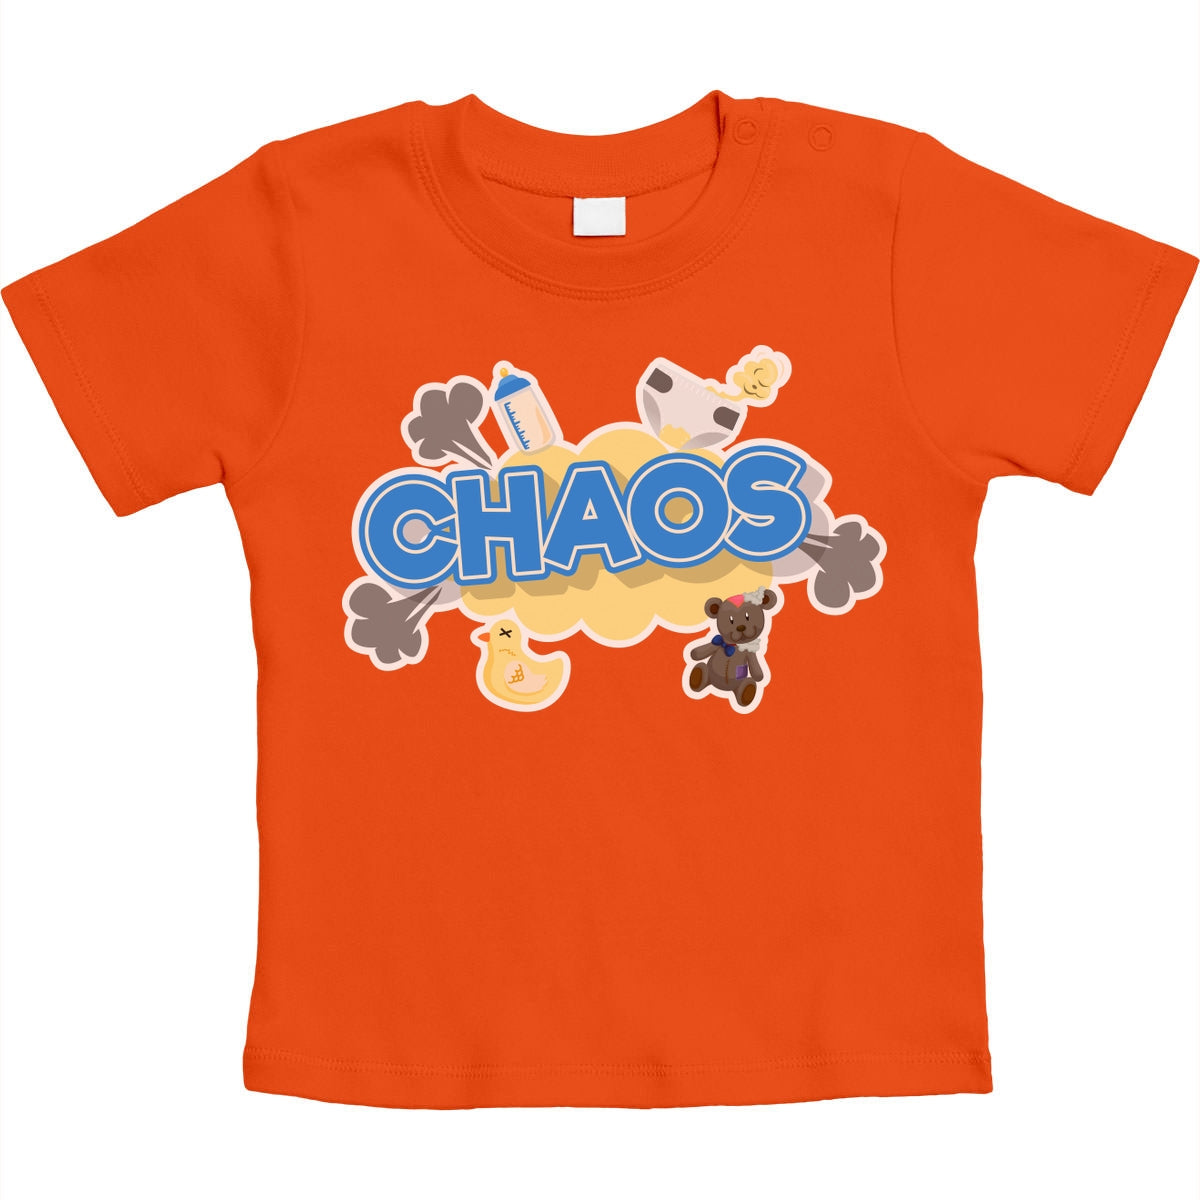 Chaos - Lustiger Spruch für Babies Unisex Baby T-Shirt Gr. 66-93